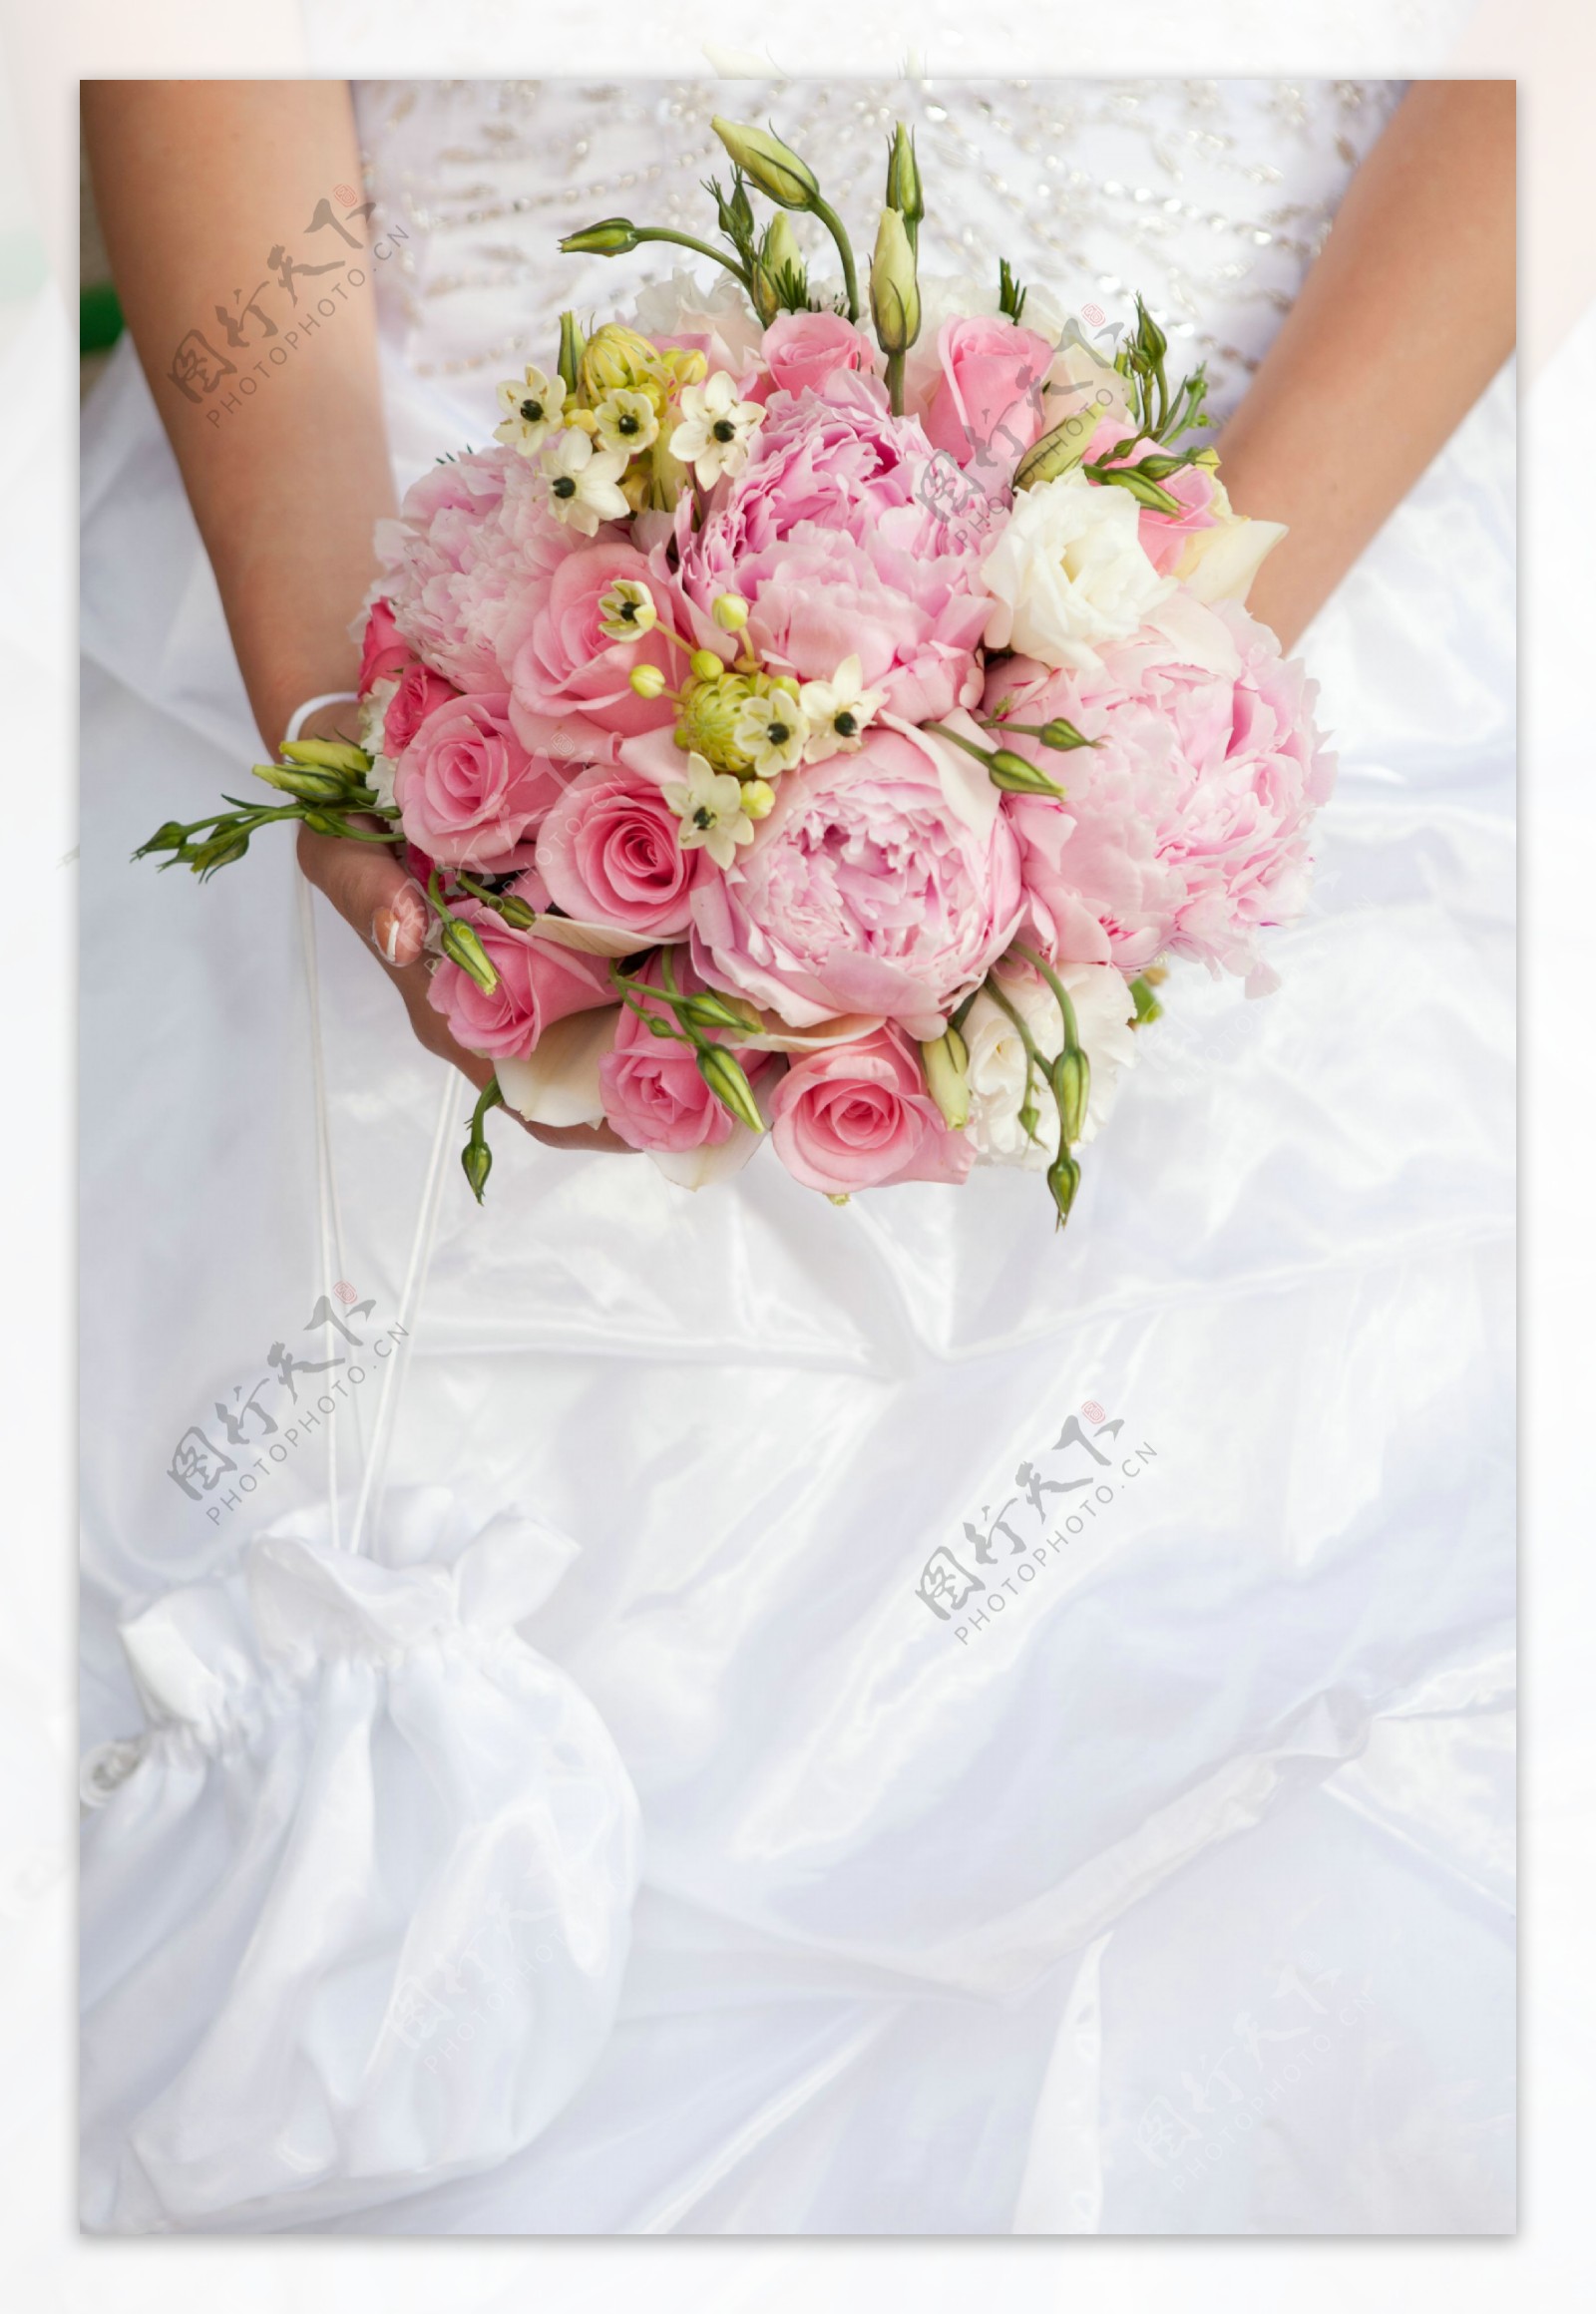 婚礼花束图片素材